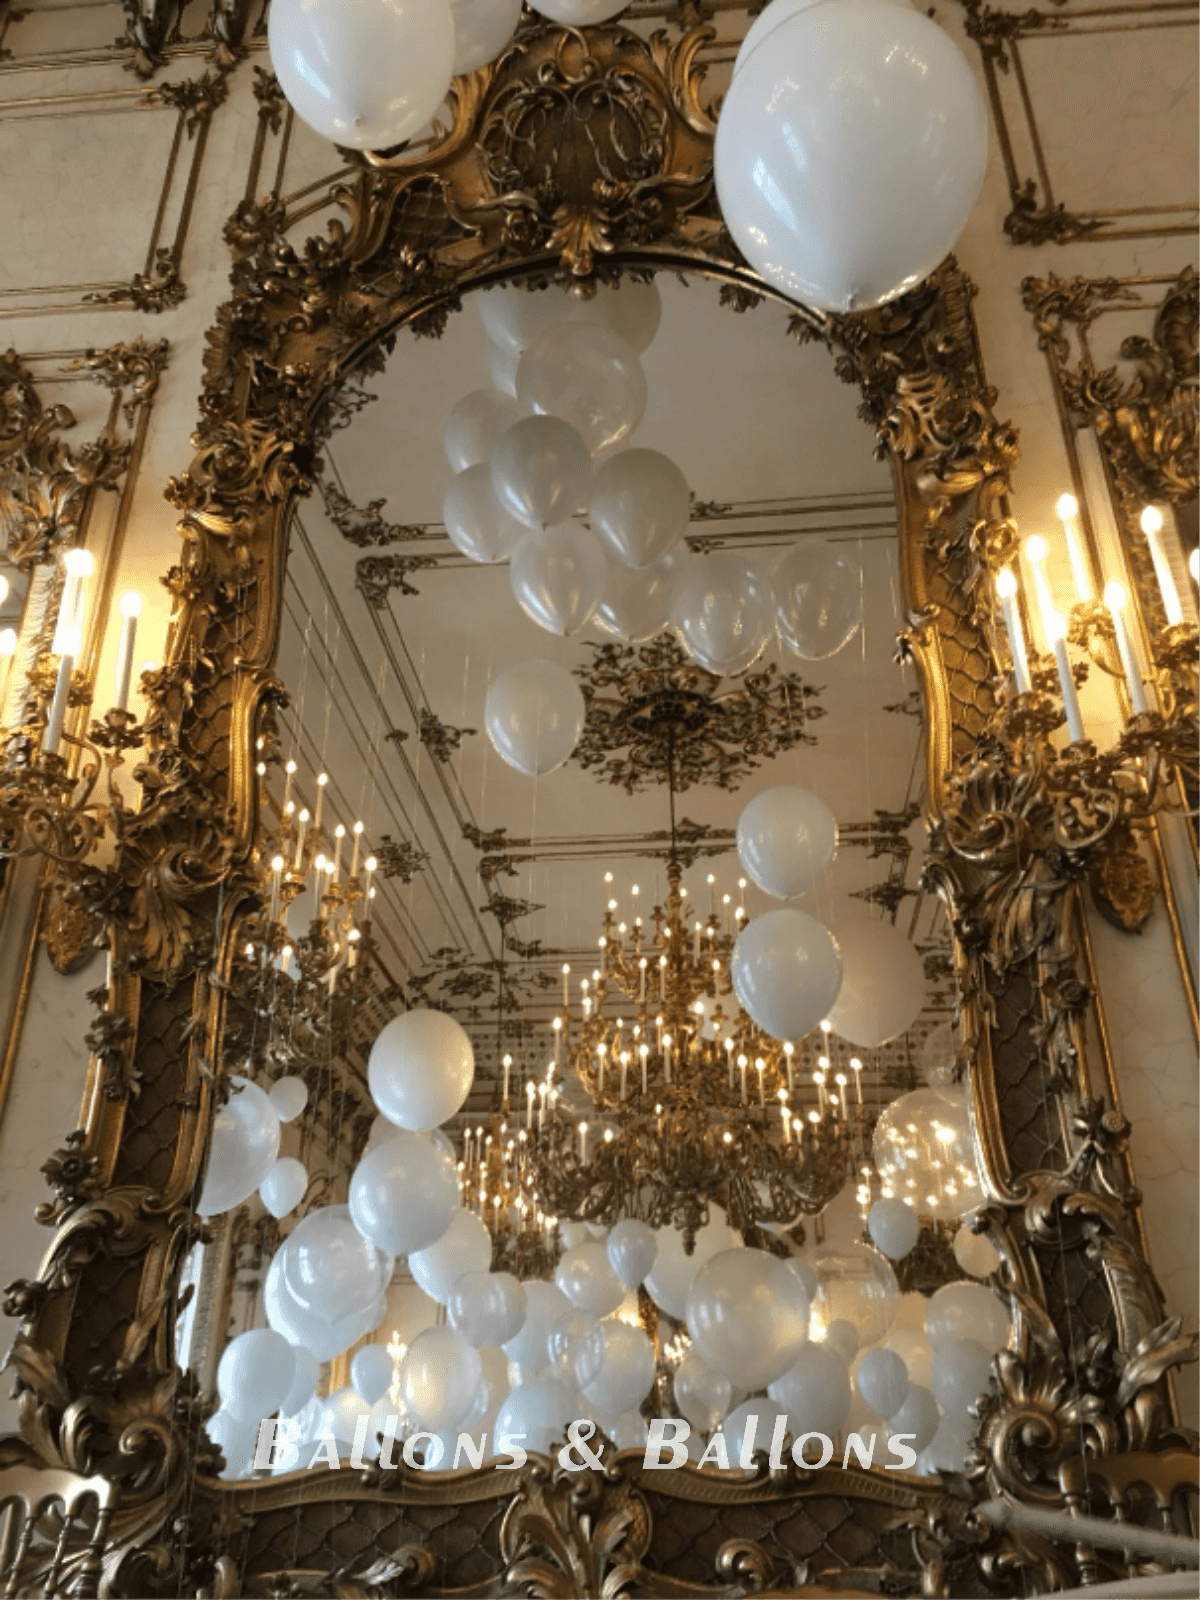 Ein Spiegel, der Luftballons in einem Lüster reflektiert.